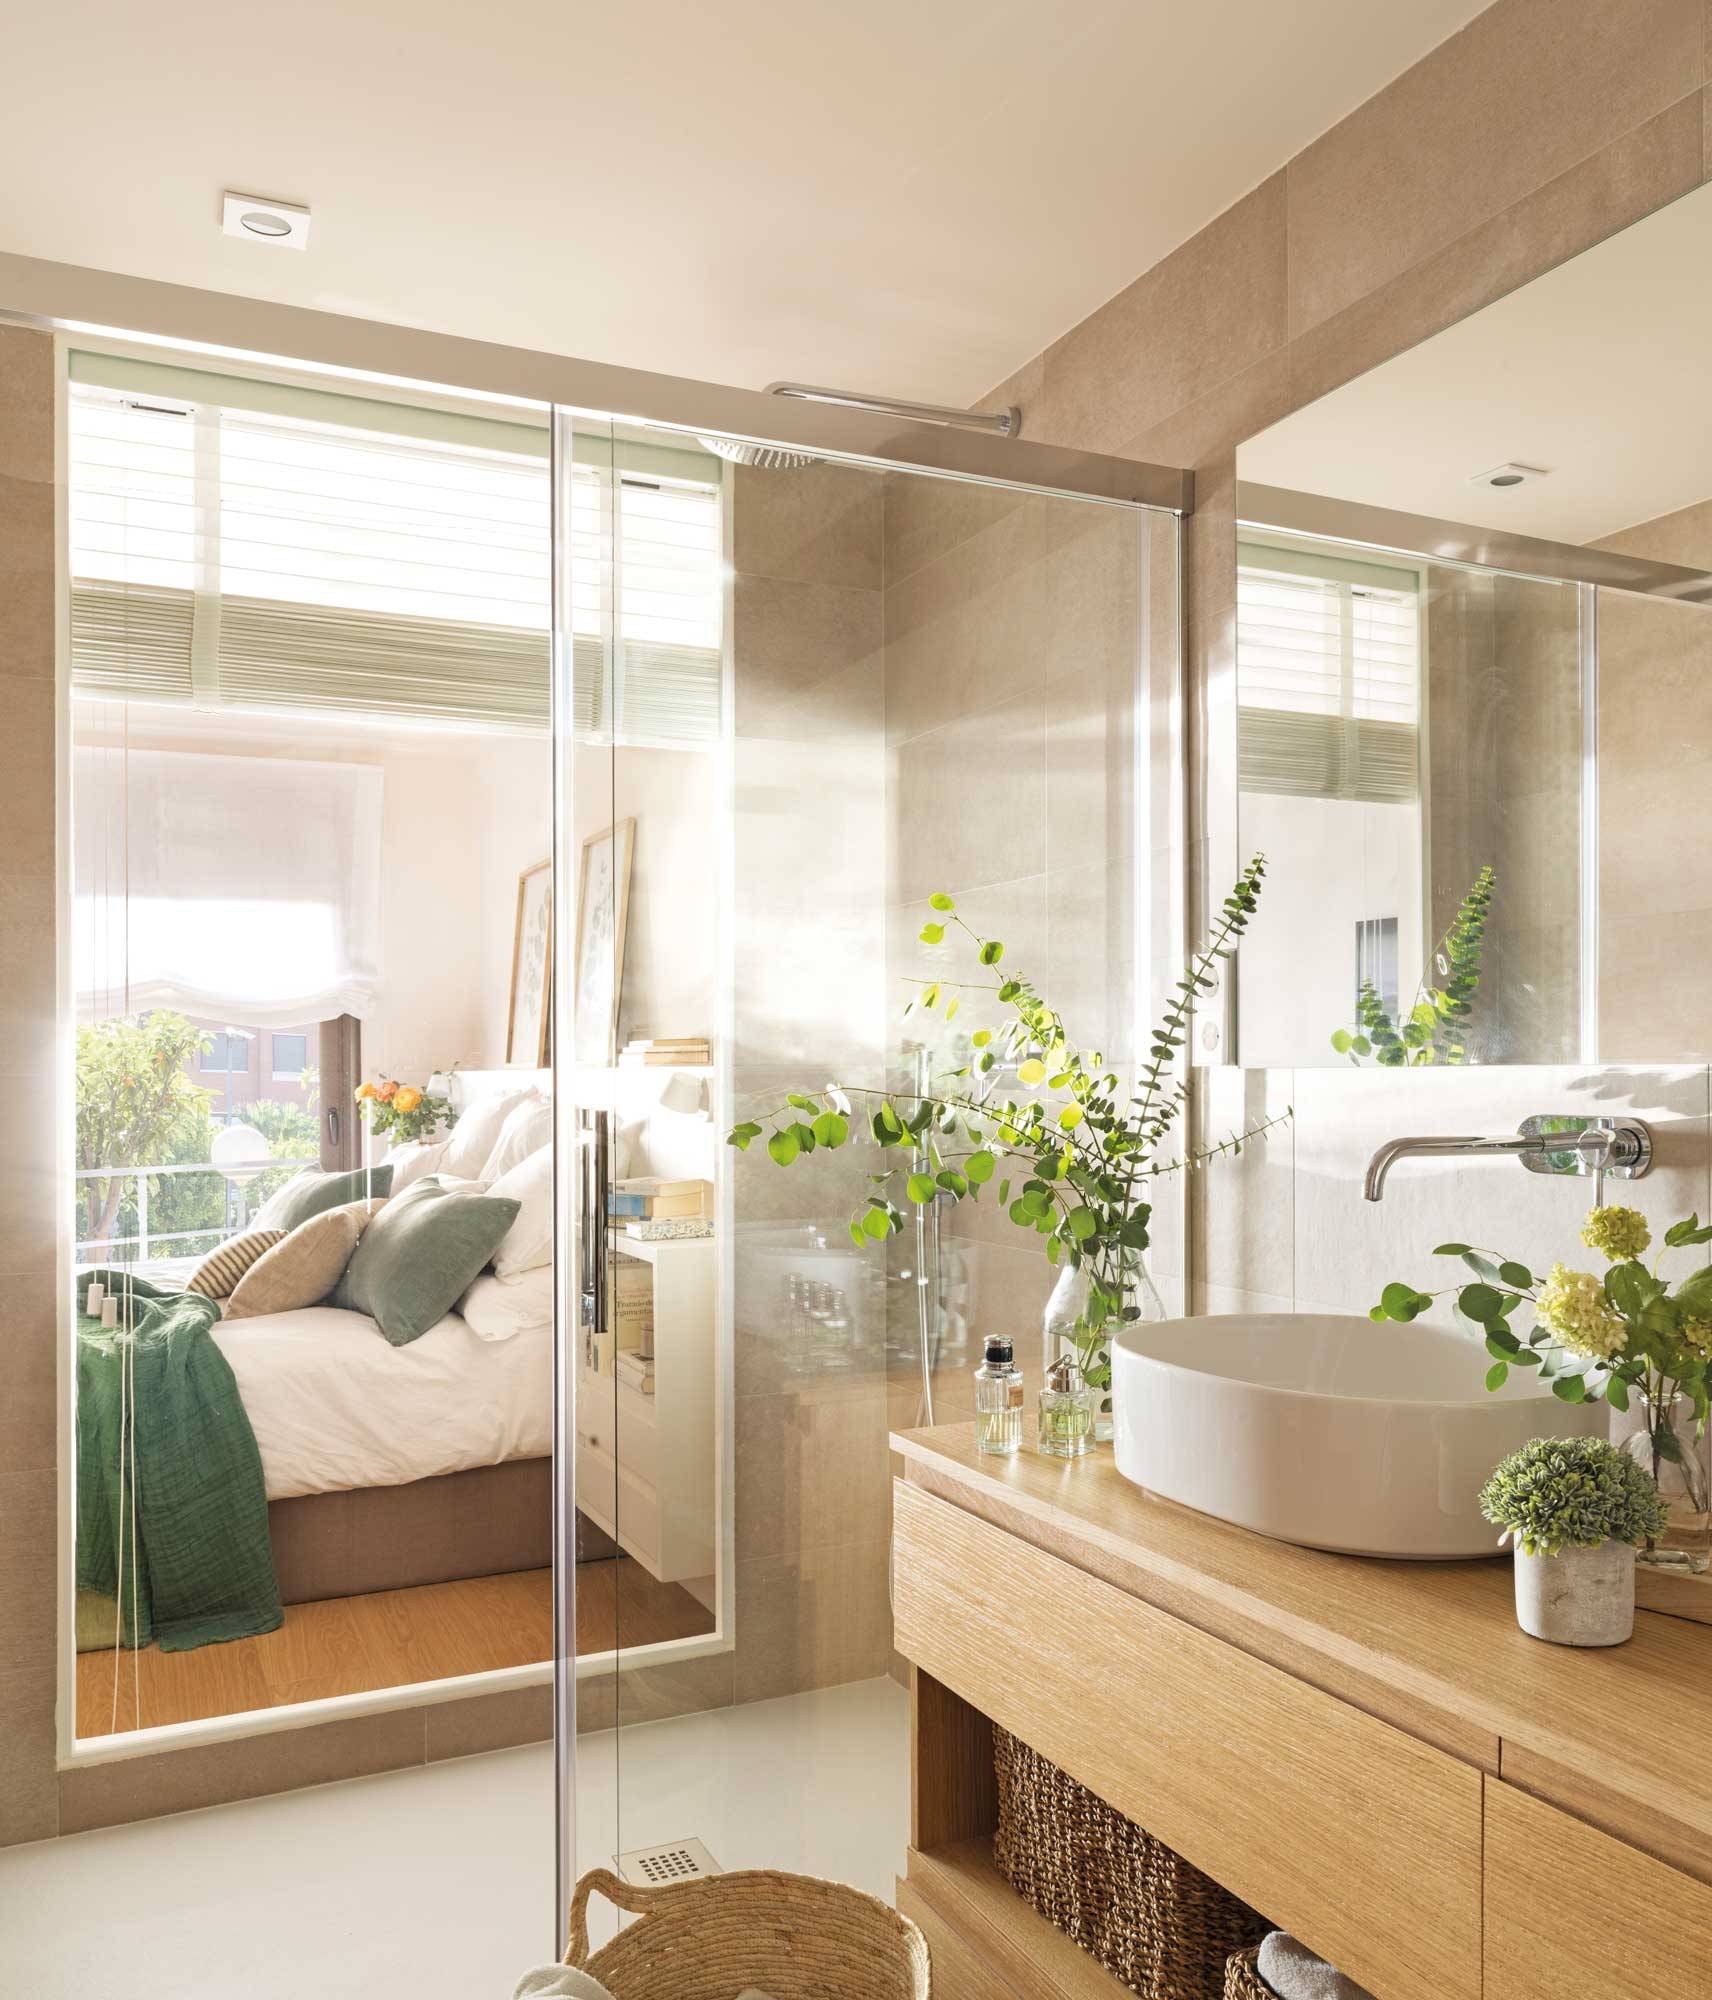 baño abierto a dormitorio con pared de cristal en zona ducha 00501601